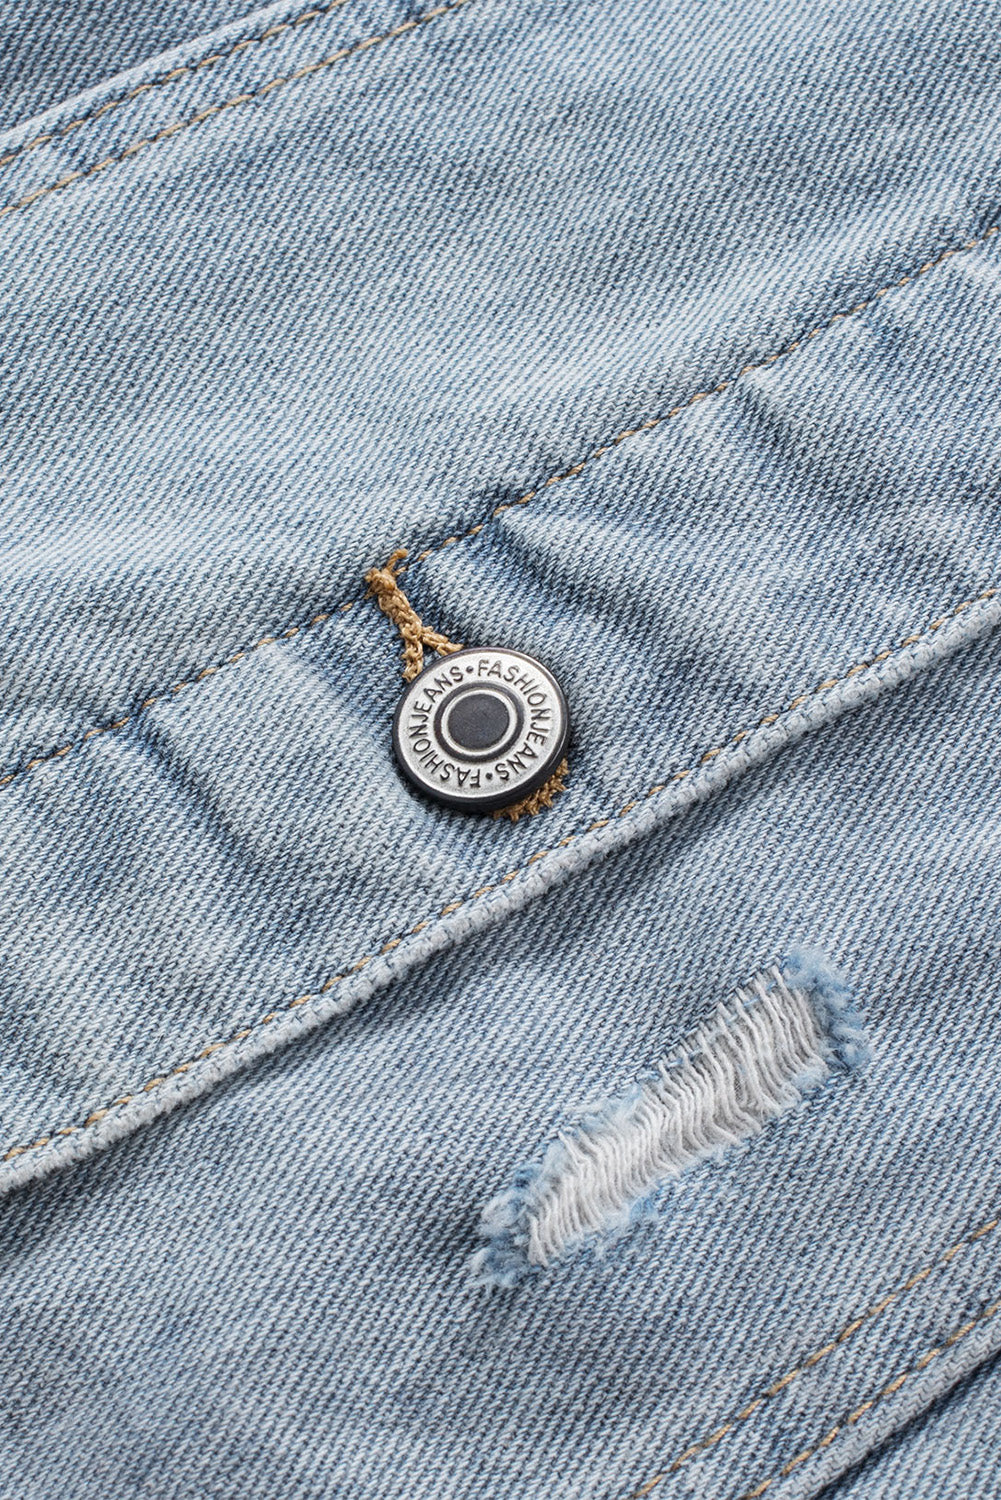 Himmelblaue, zerrissene Jeansjacke mit Knopfverschluss und Kapuze